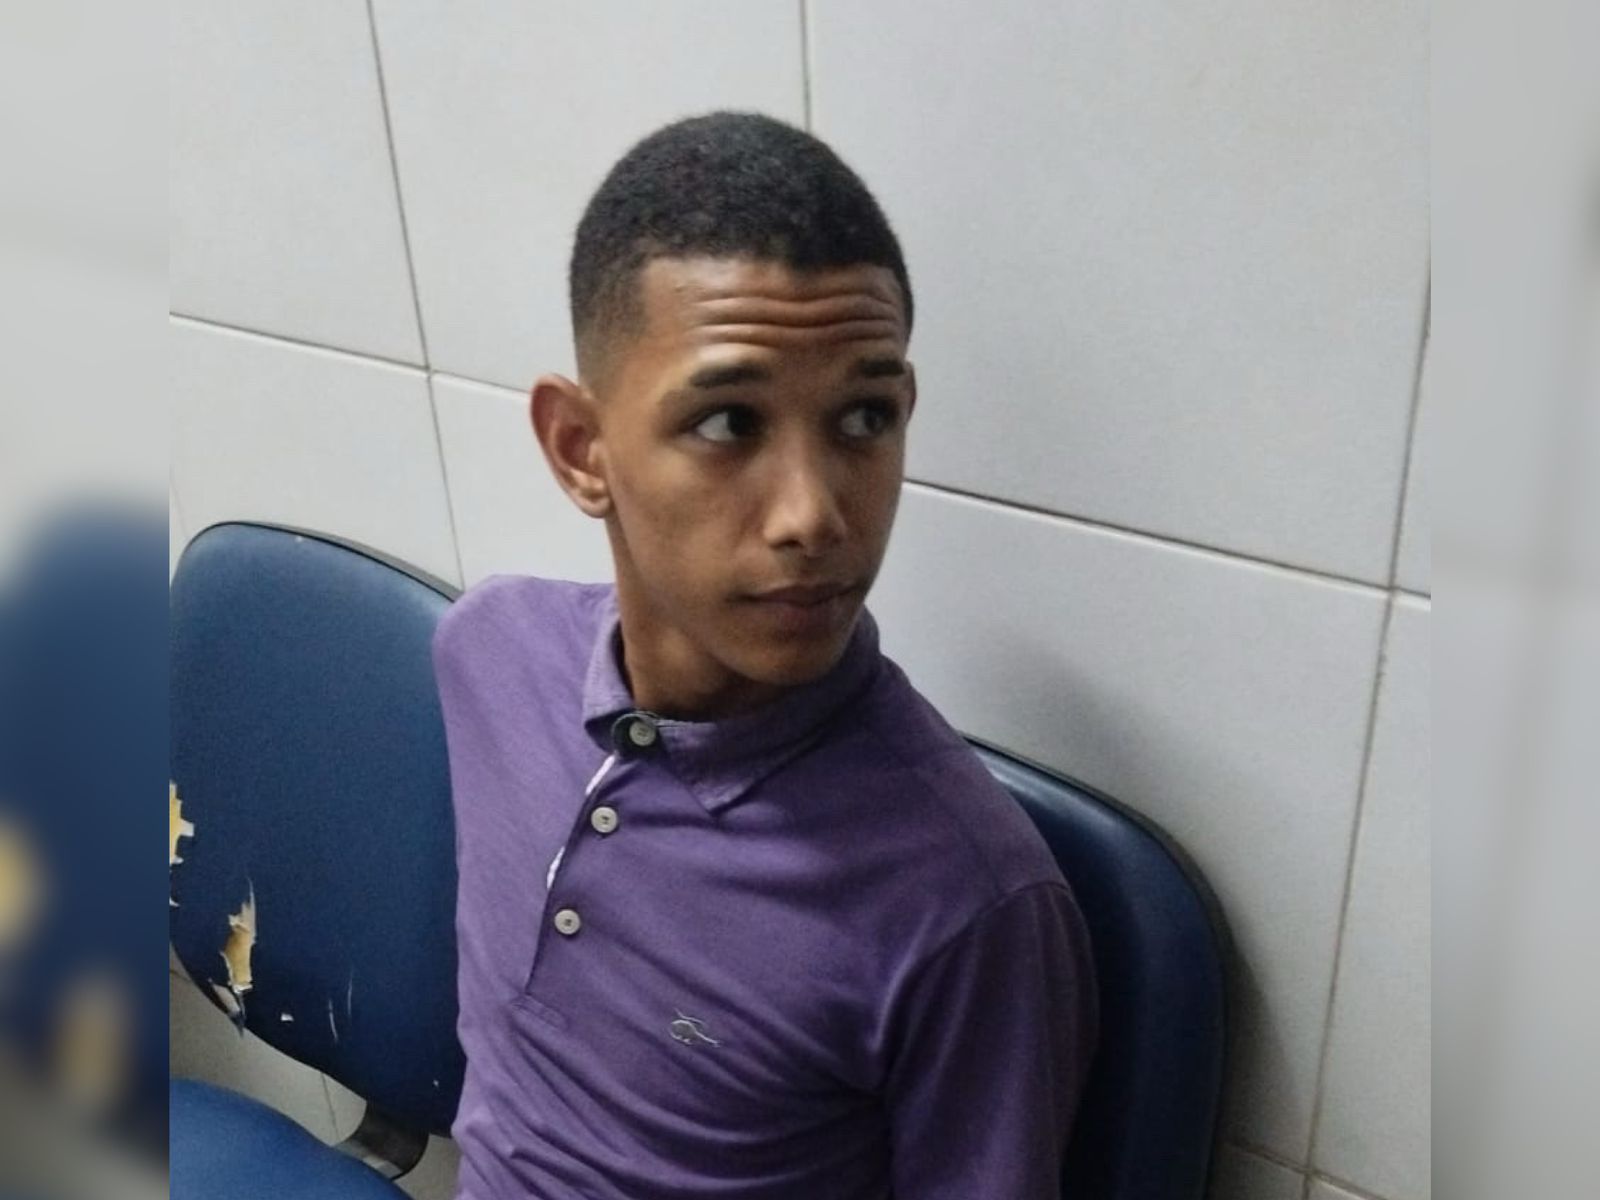 AO VIVO: jovem é executado a tiros dentro de casa, no bairro João Cabral, em Juazeiro do Norte